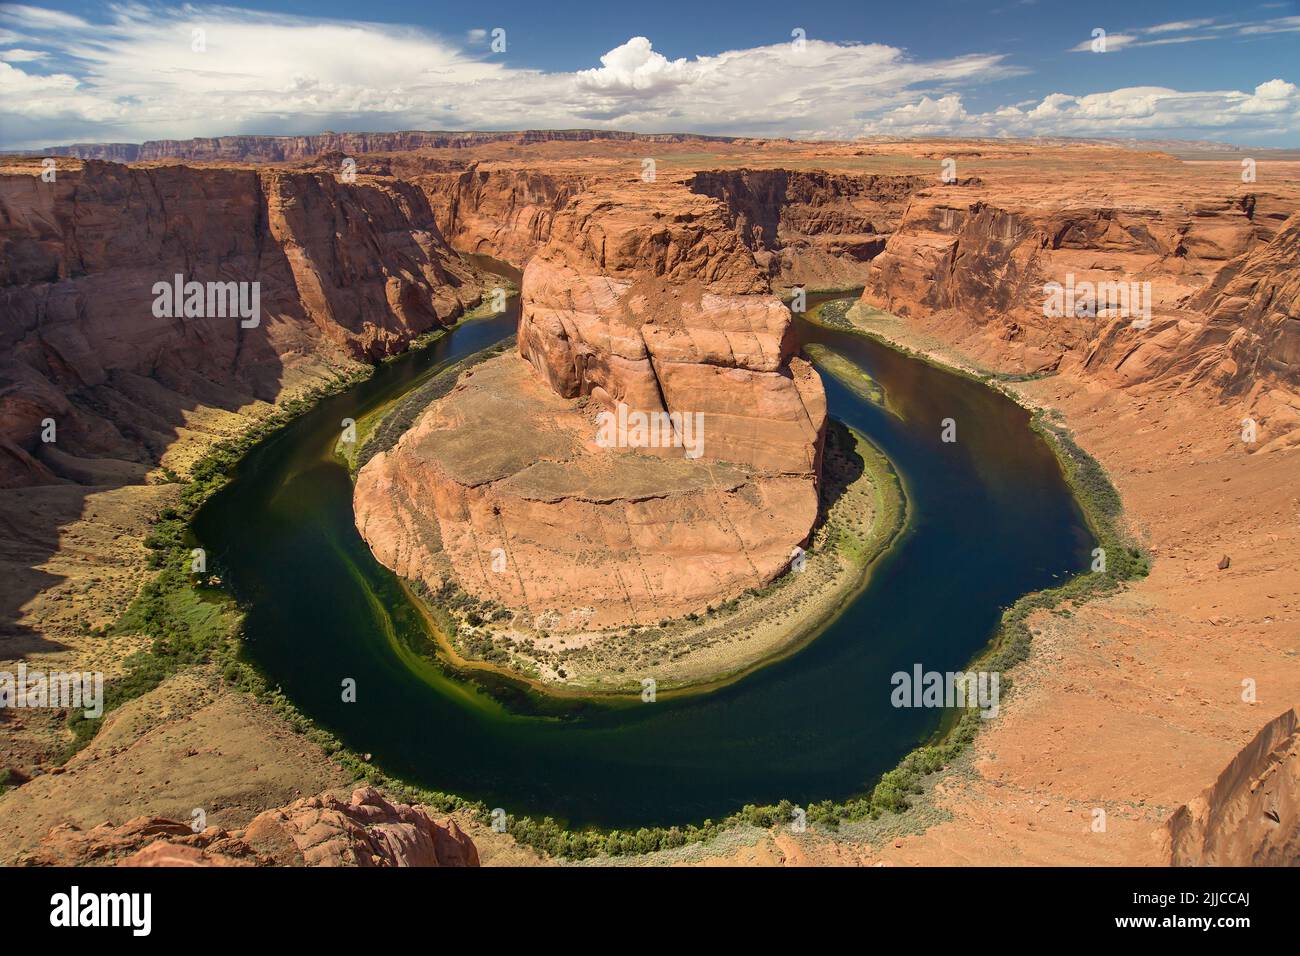 Horseshoe Bend on the Colorado River, Arizona, United States. Stock Photo